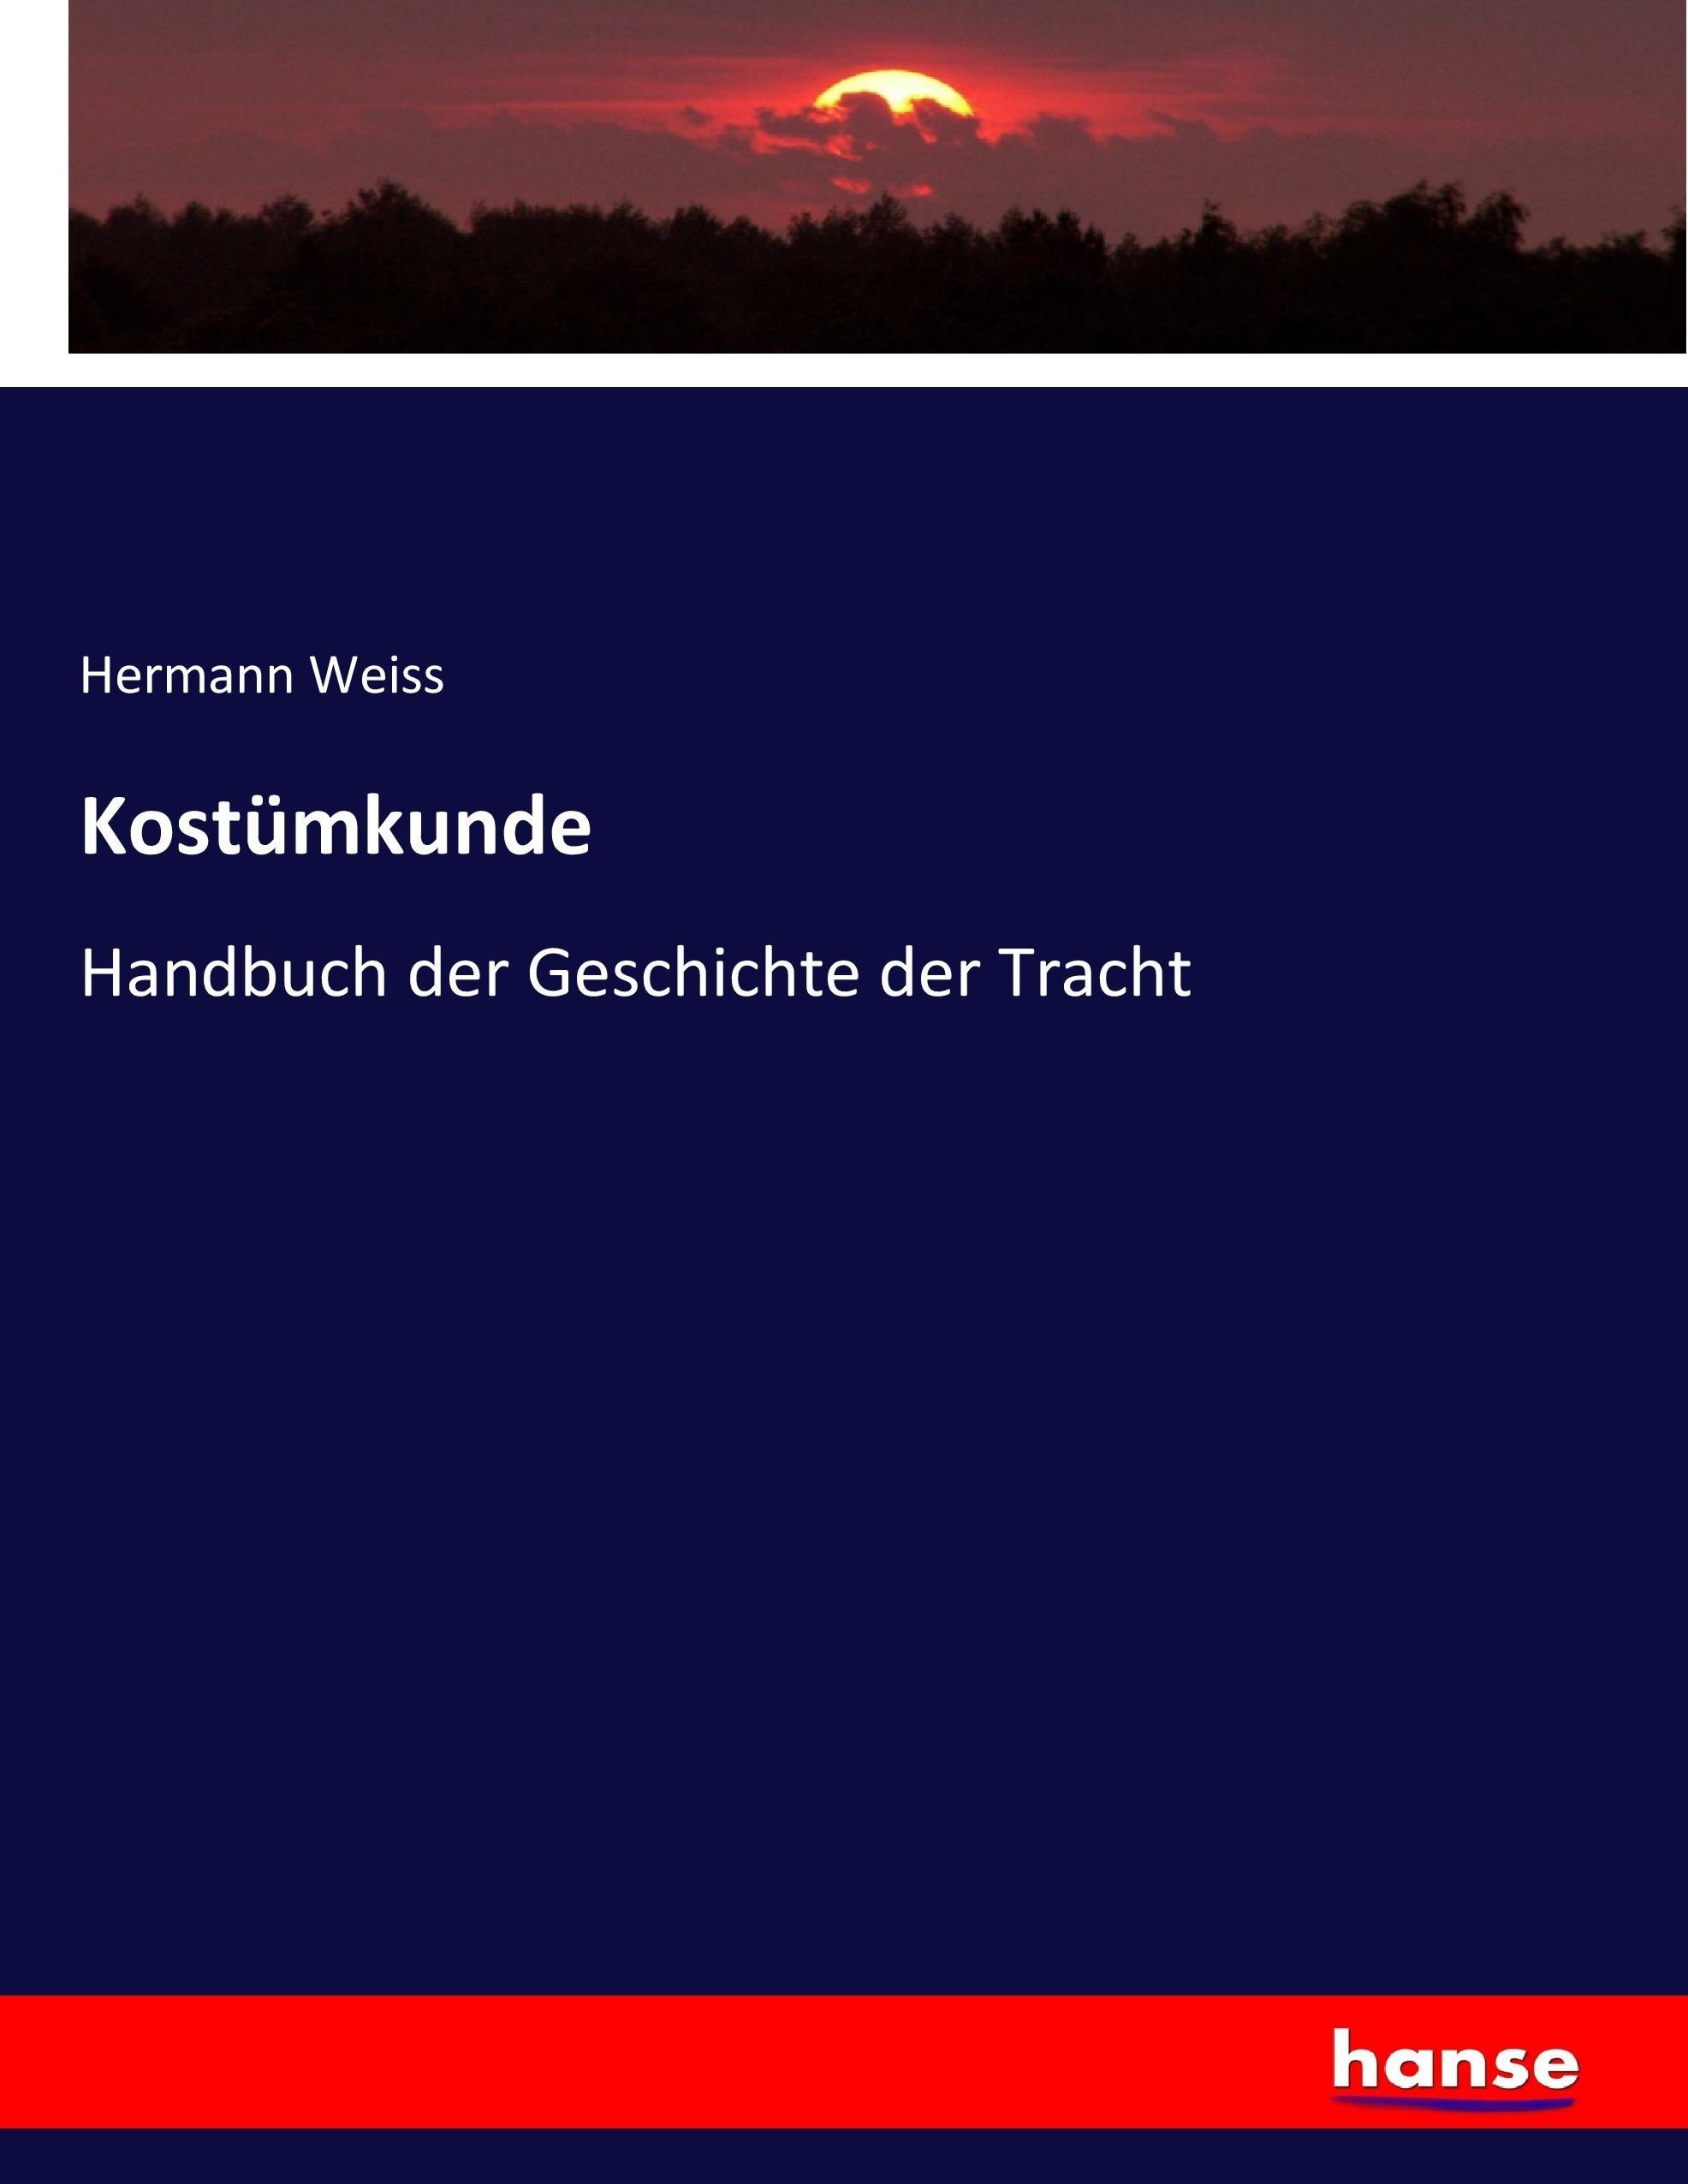 Kostümkunde | Handbuch der Geschichte der Tracht | Hermann Weiss | Taschenbuch | Paperback | 572 S. | Deutsch | 2017 | hansebooks | EAN 9783743460751 - Weiss, Hermann